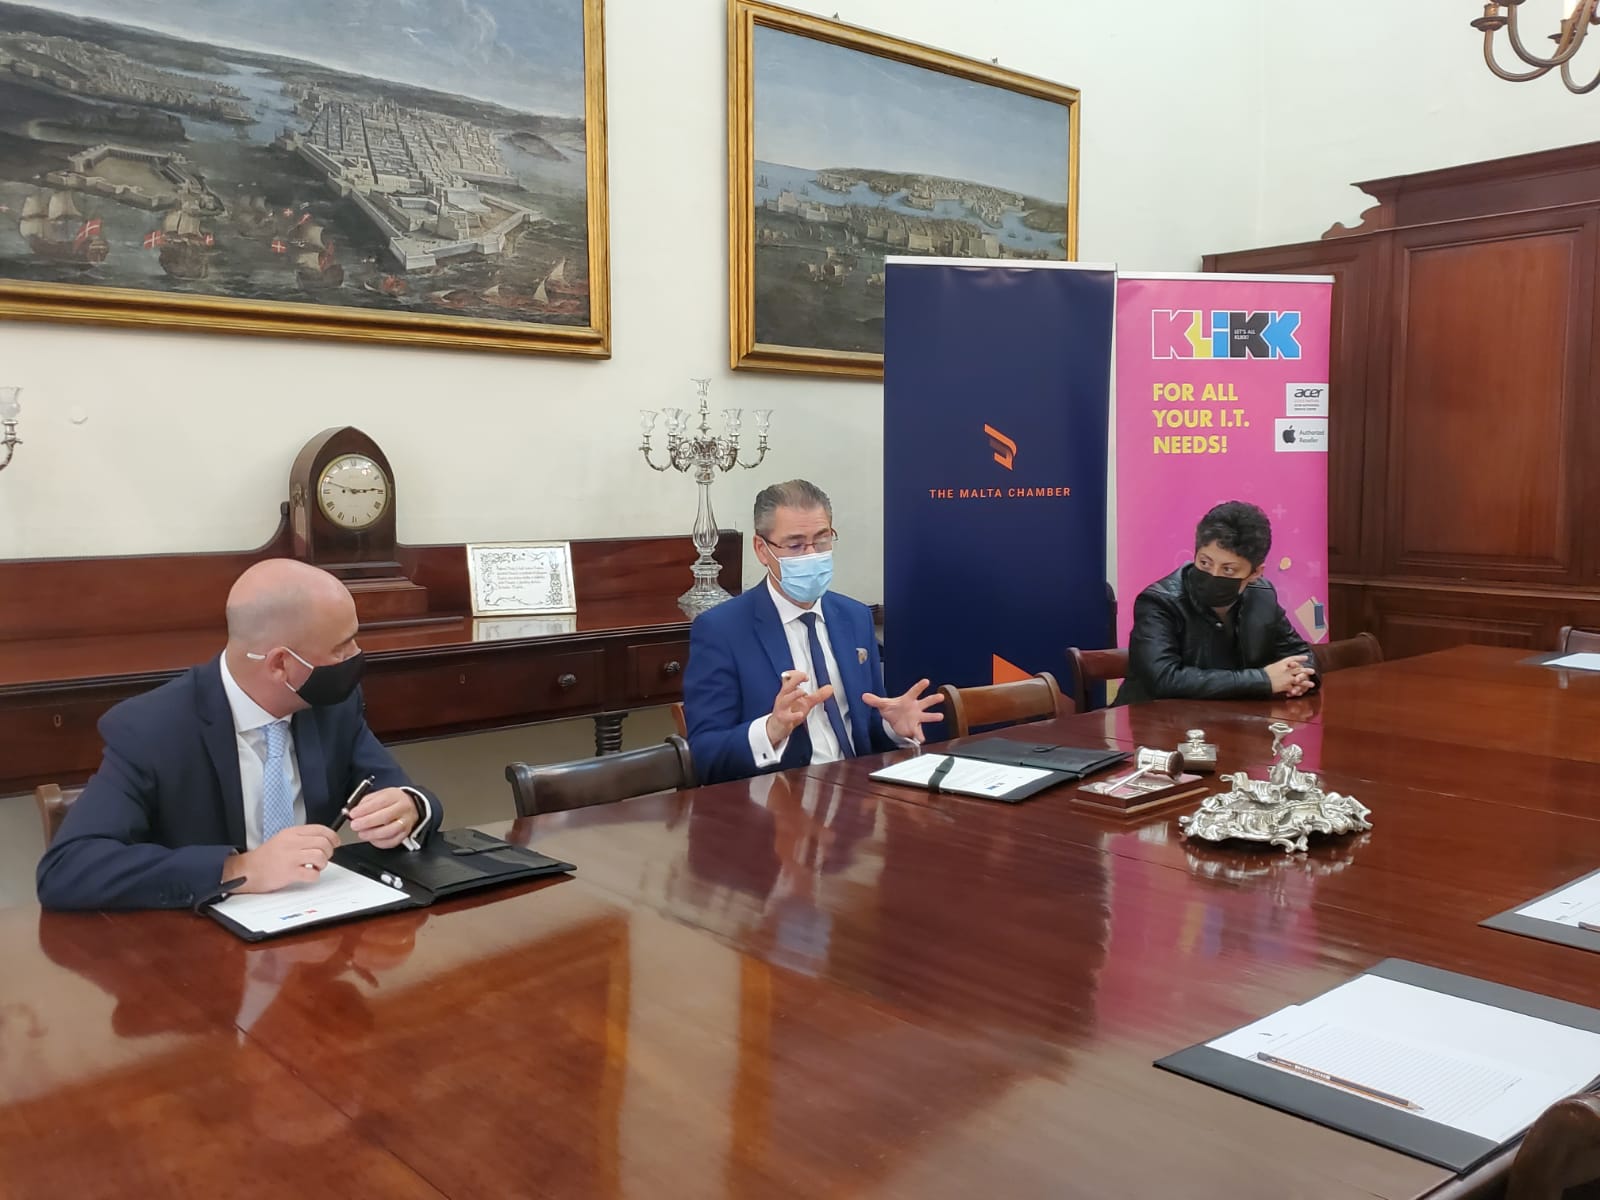 Klikk and Malta Chamber, in support of businesses in Malta